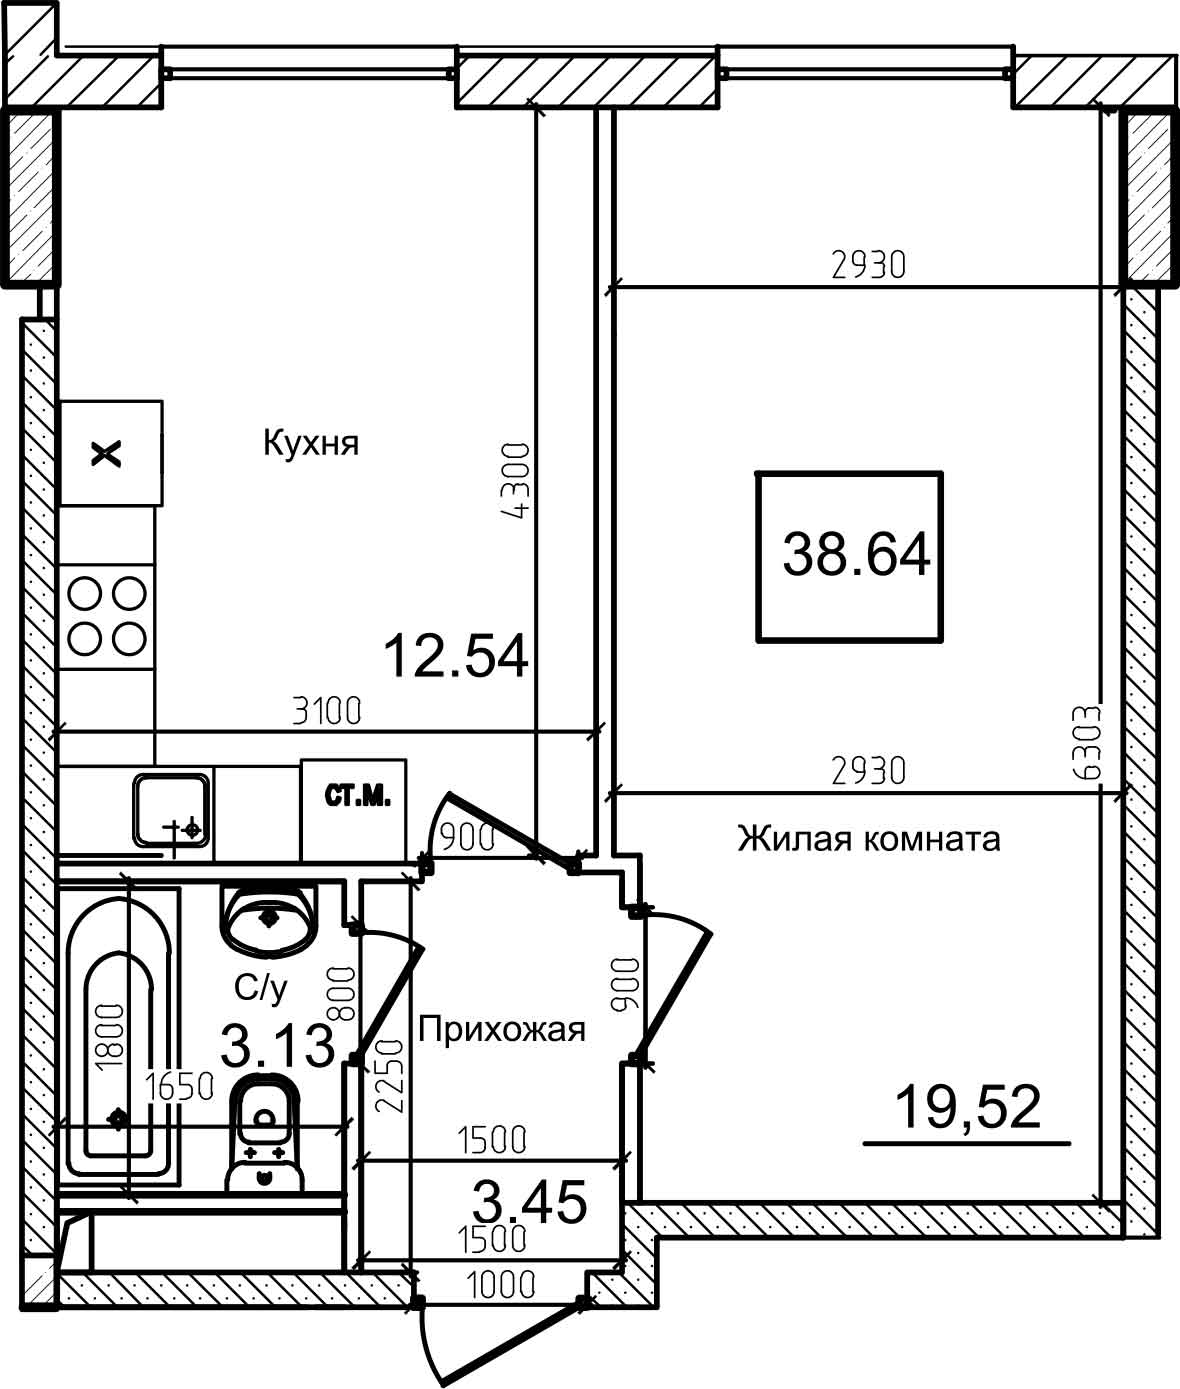 Планировка 1-к квартира площей 38.3м2, AB-08-04/00009.